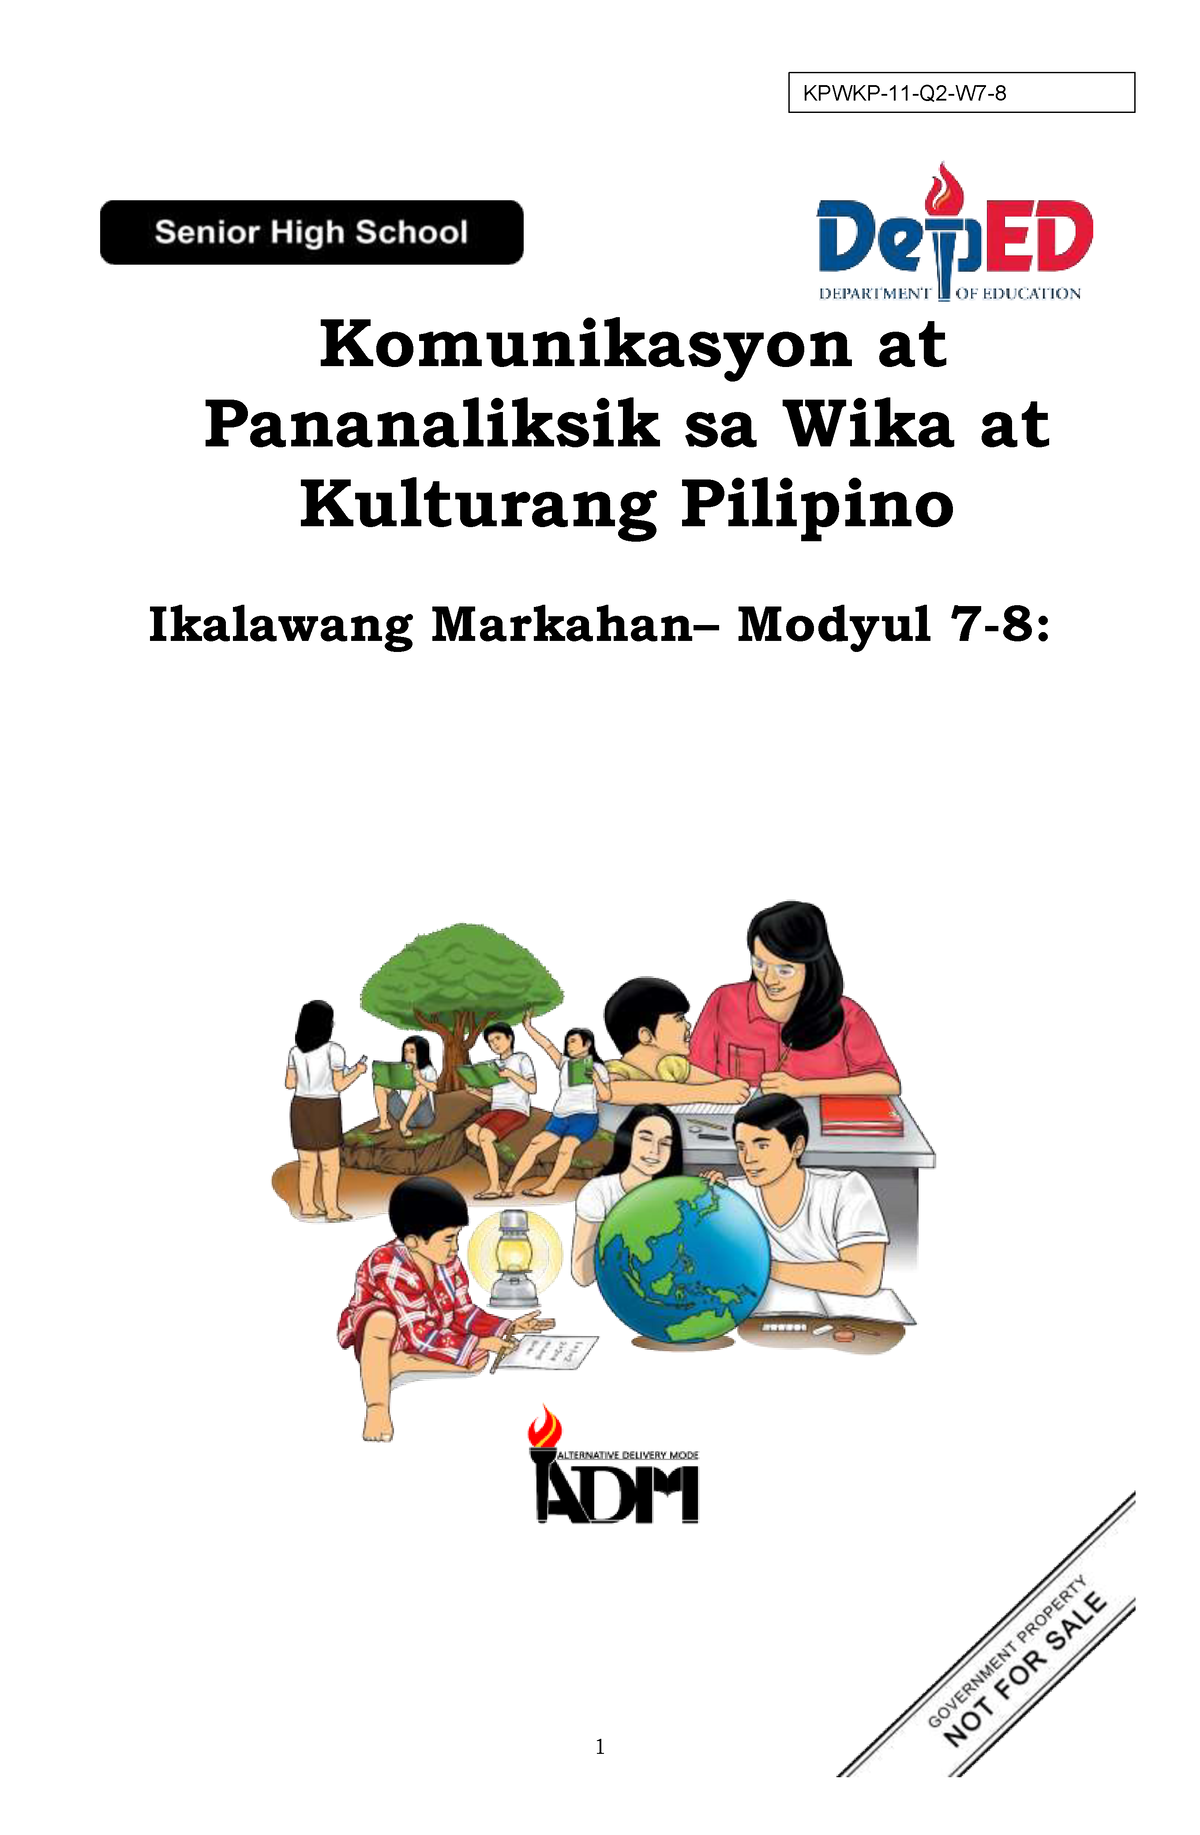 Pagkakaiba Ng Kultura Ng Pilipinas Sa Ibang Bansa Images